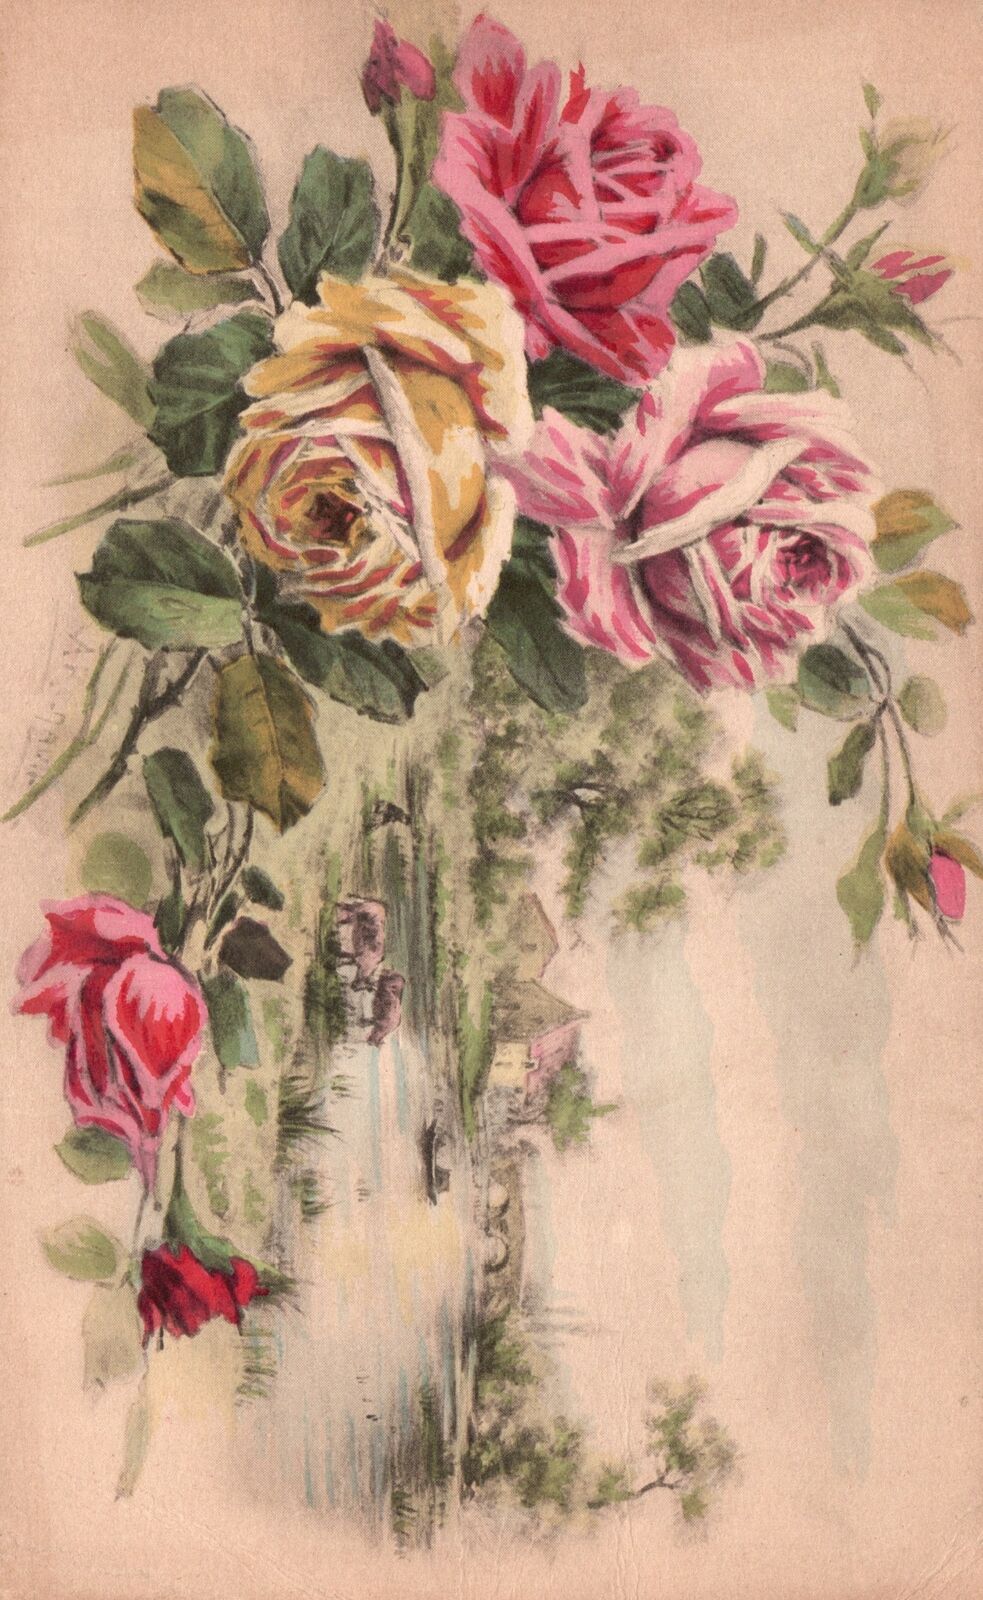 Vintage Postcard Remembrance Card Flower Design With Landscape Background